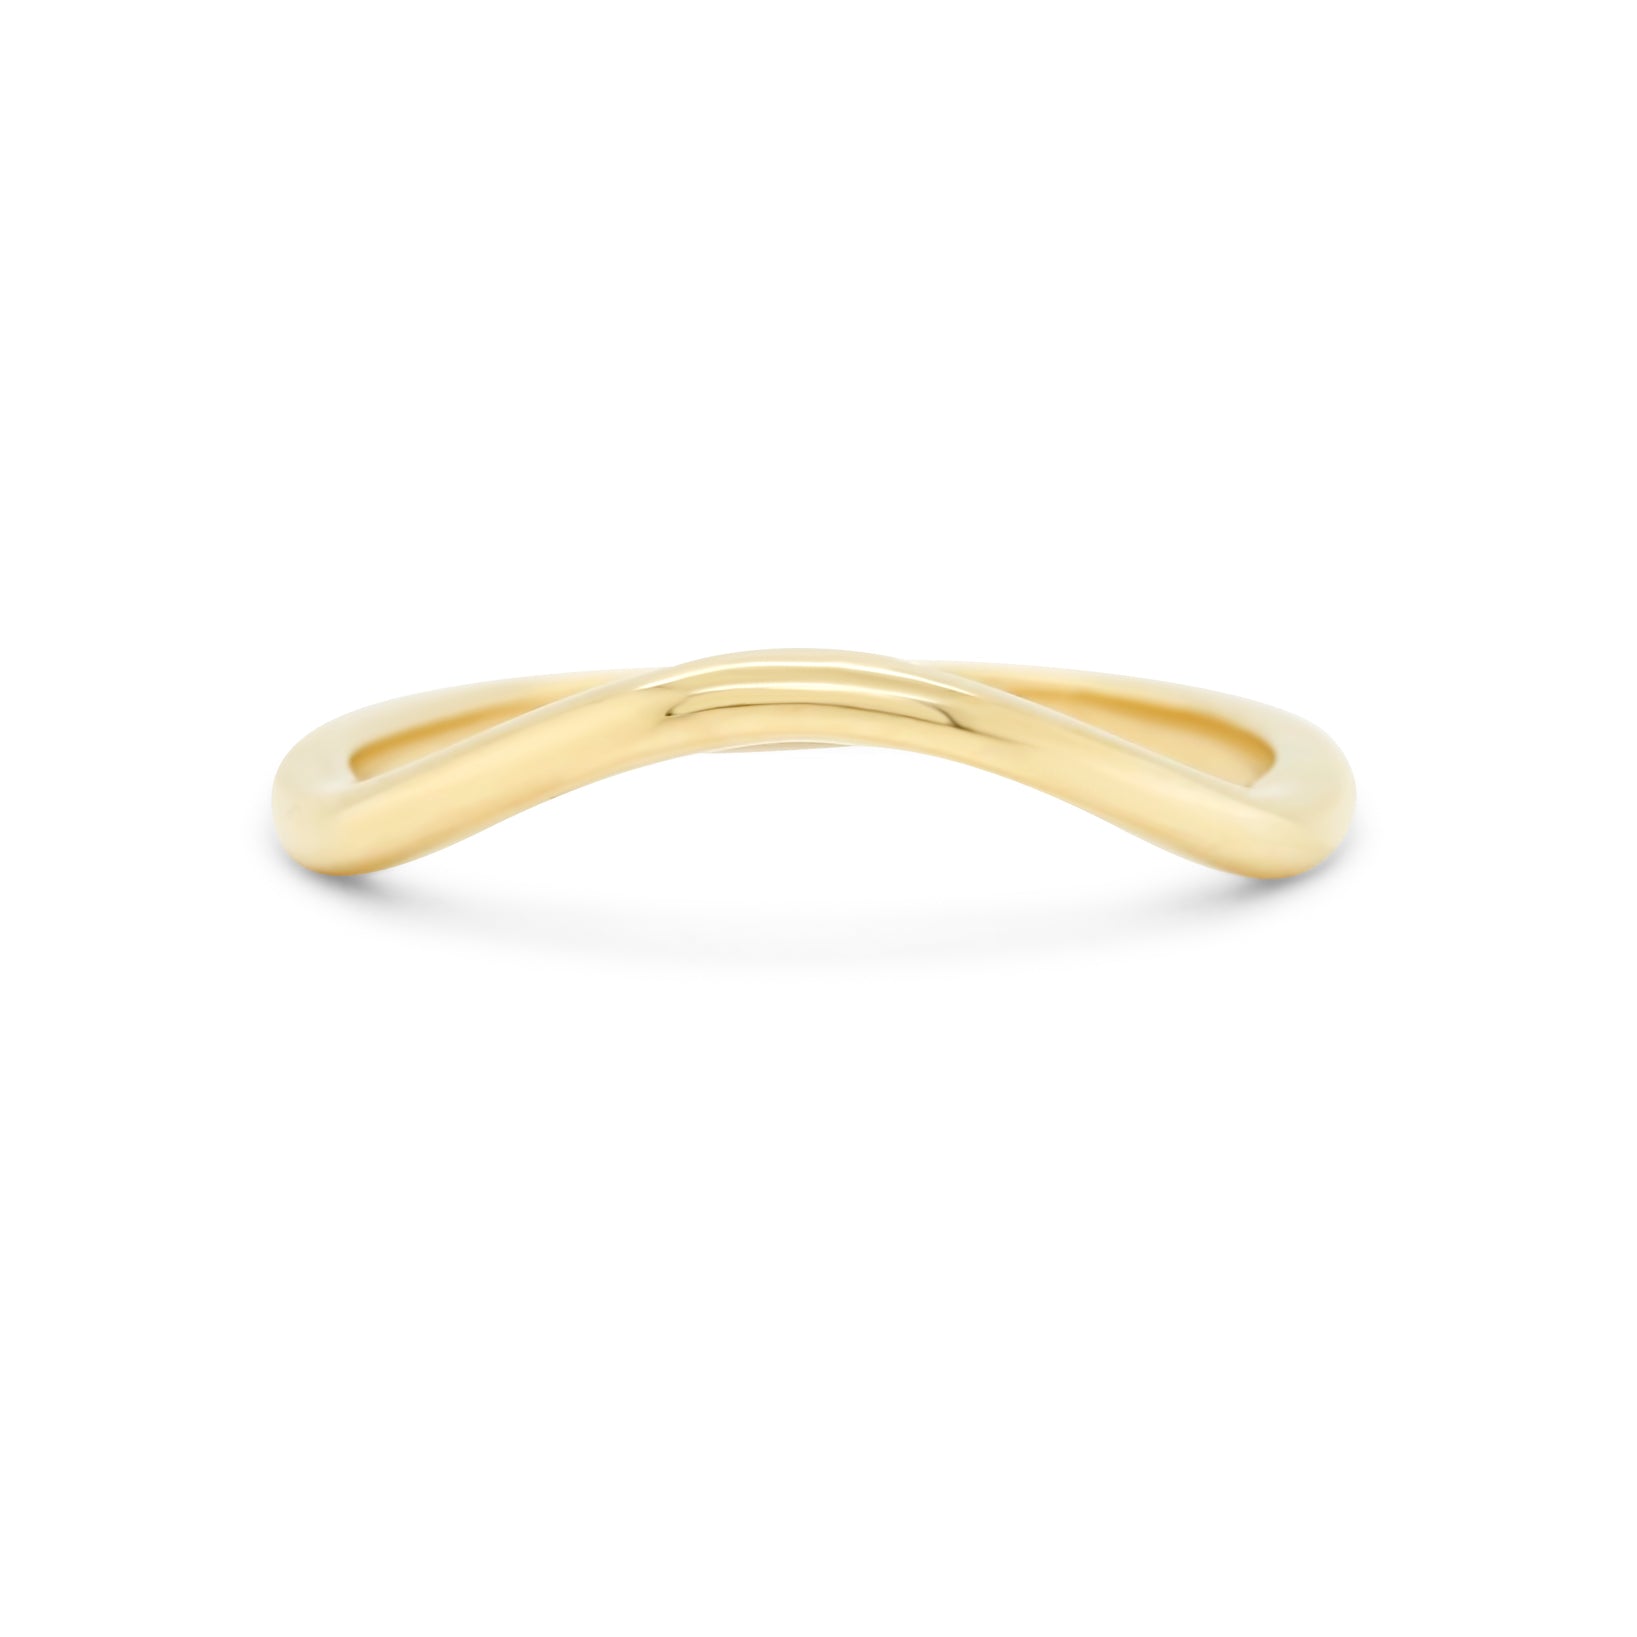 14k gold plain slight contour ring band